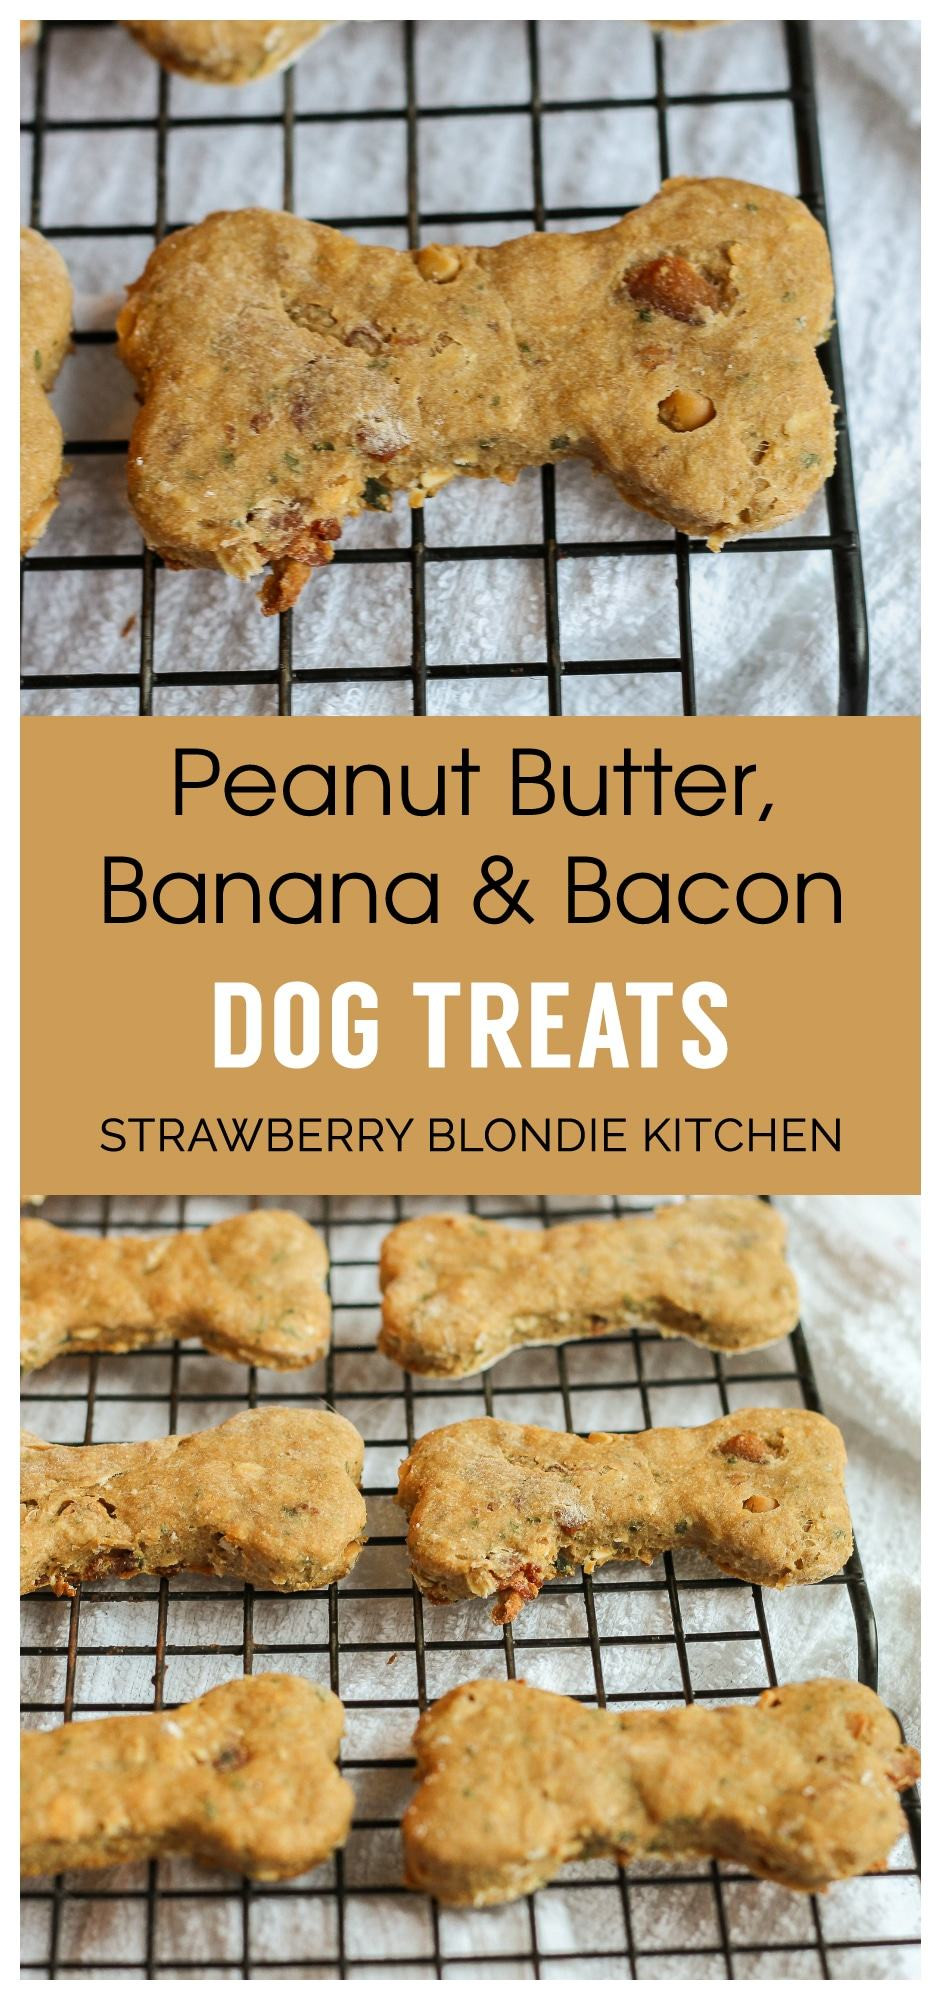 DIY Dog Treats With Peanut Butter
 DIY Peanut Butter Bacon Banana Dog Treats Strawberry